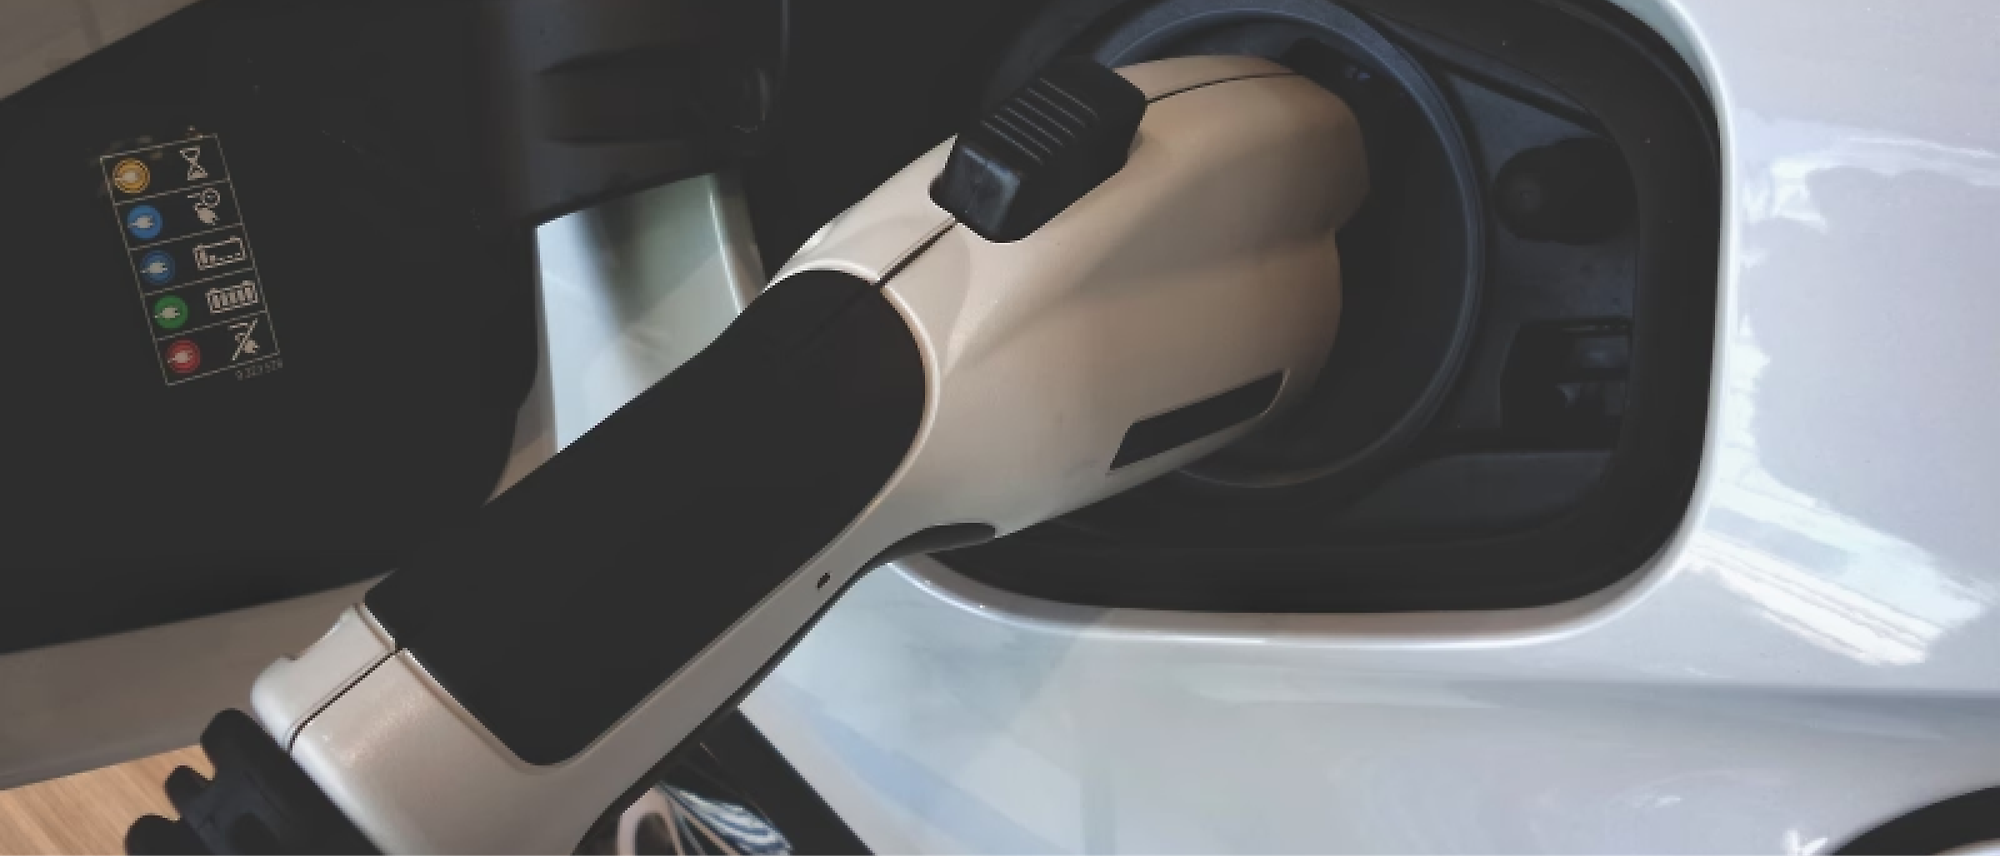 A close up of a car's fuel pump